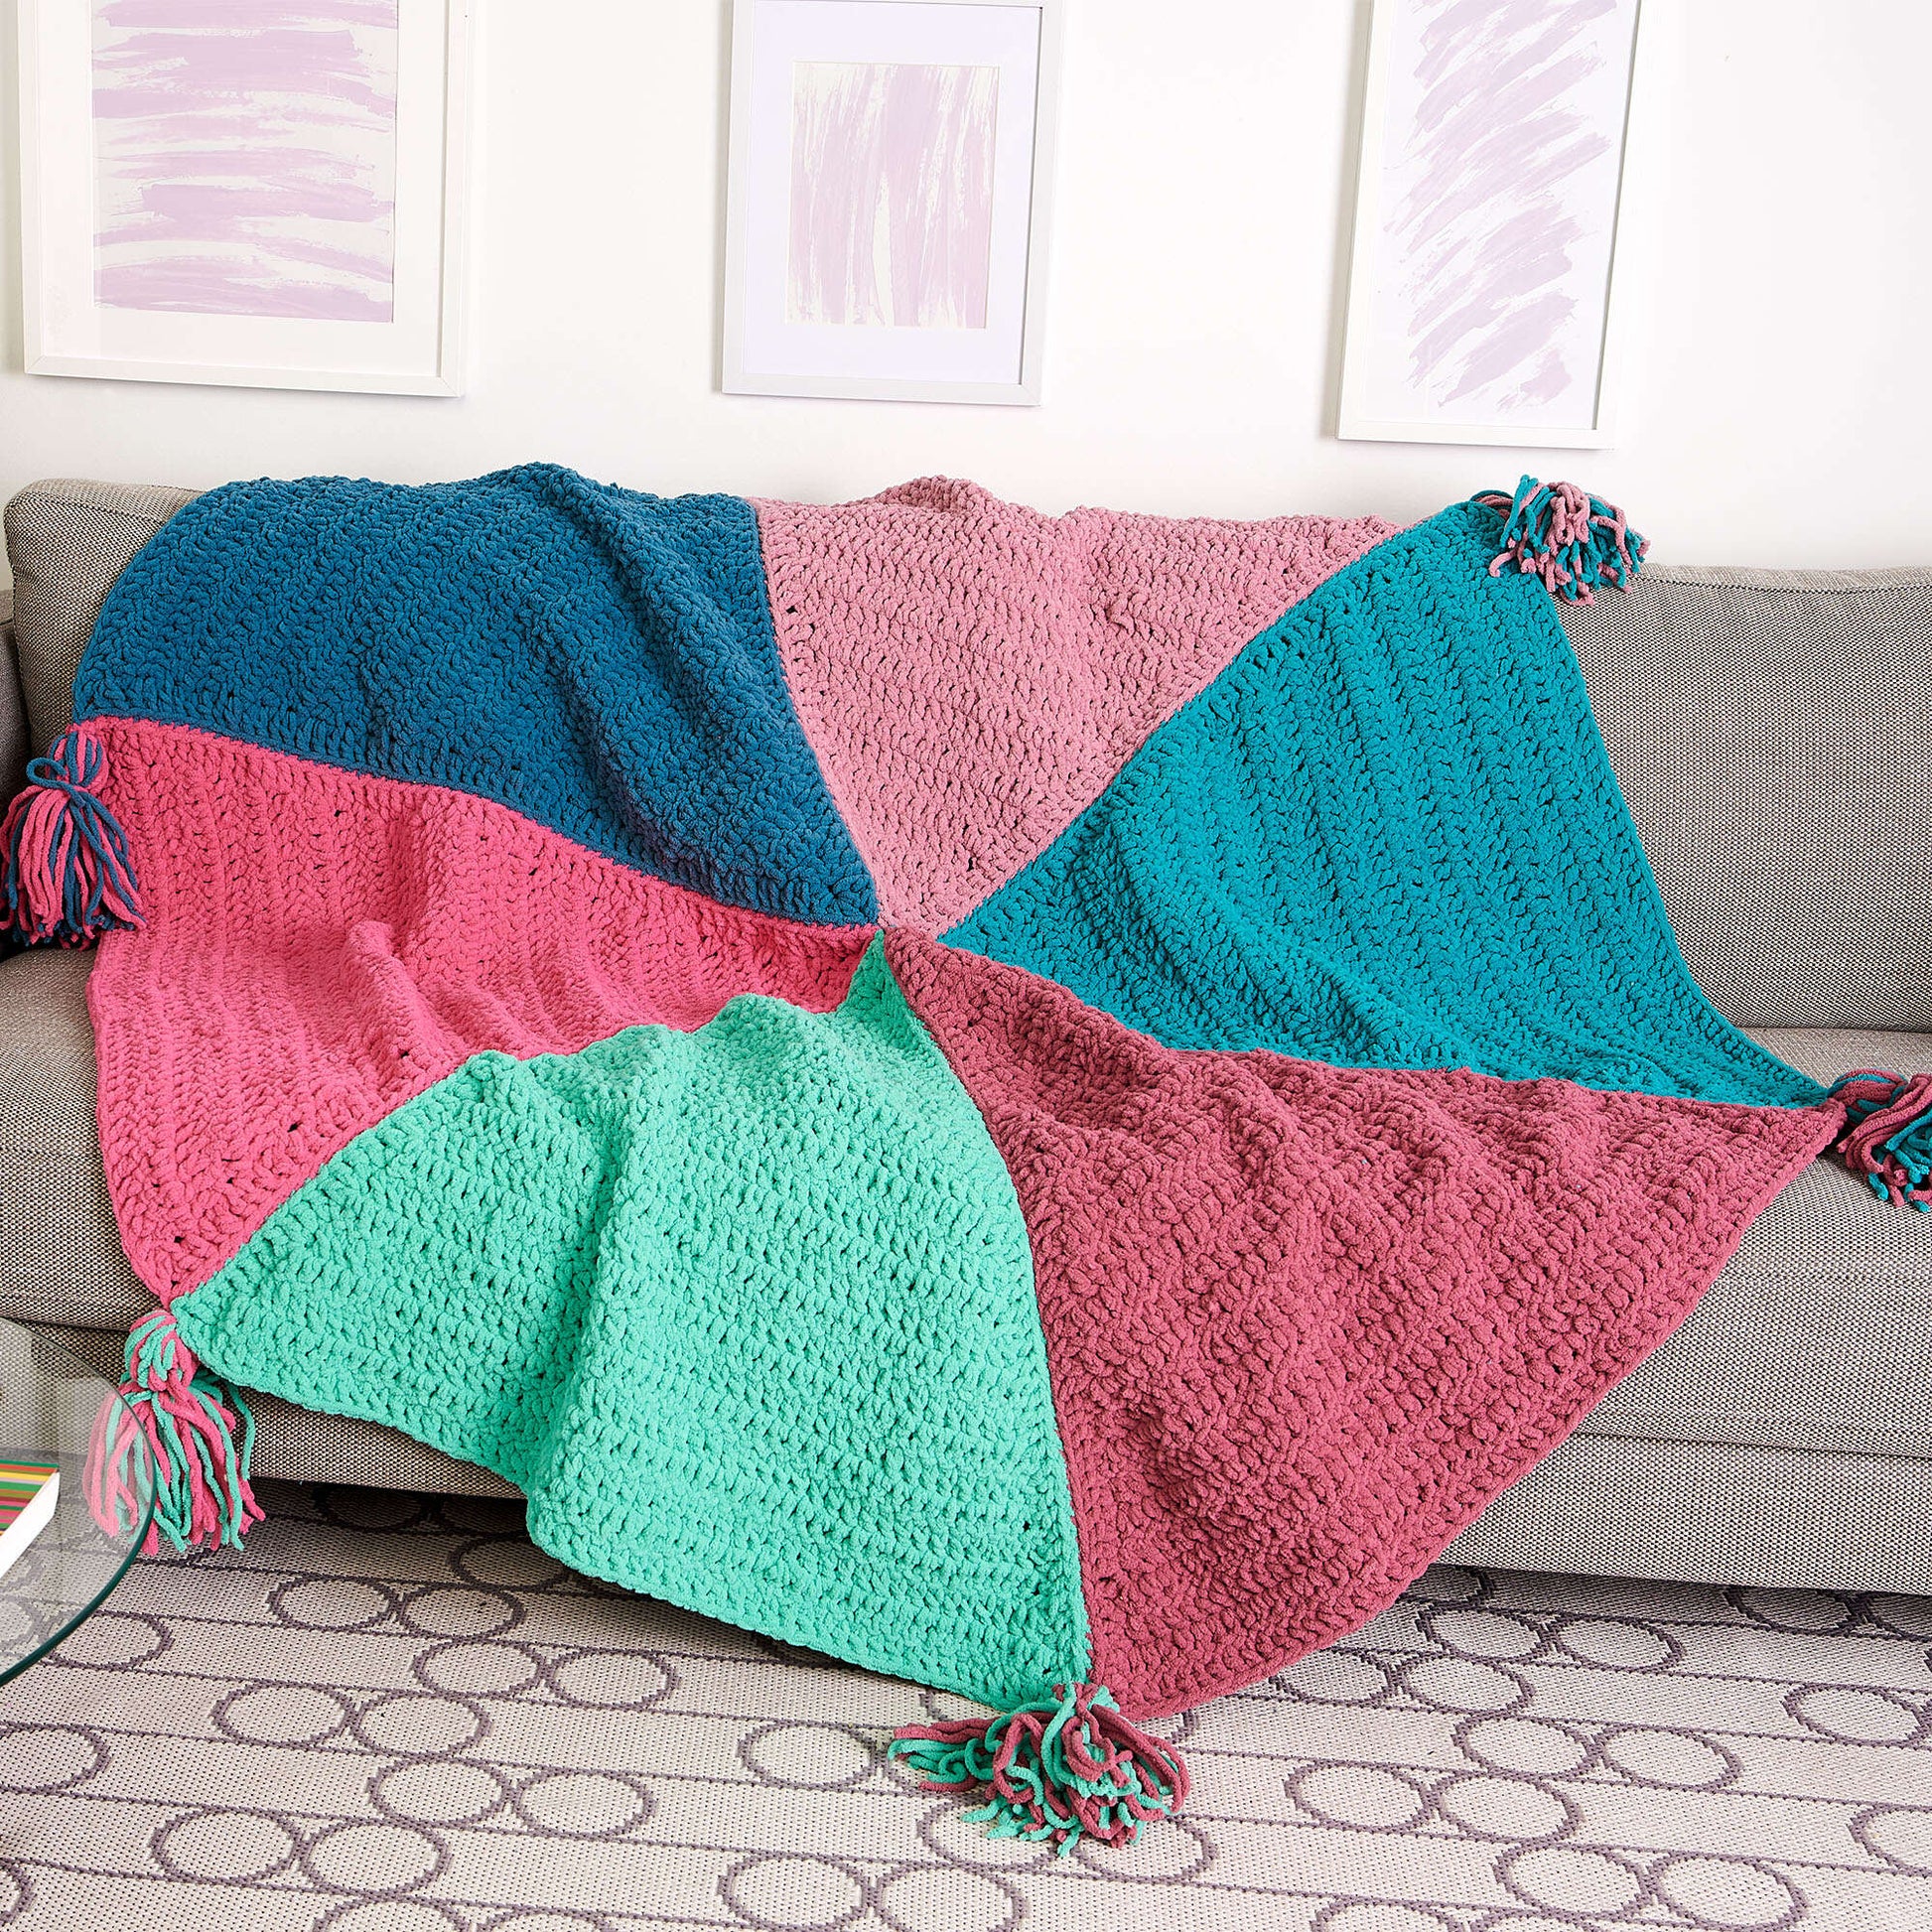 Bernat Hexagonal Slice Crochet Blanket Crochet Blanket made in Bernat Blanket O'Go yarn